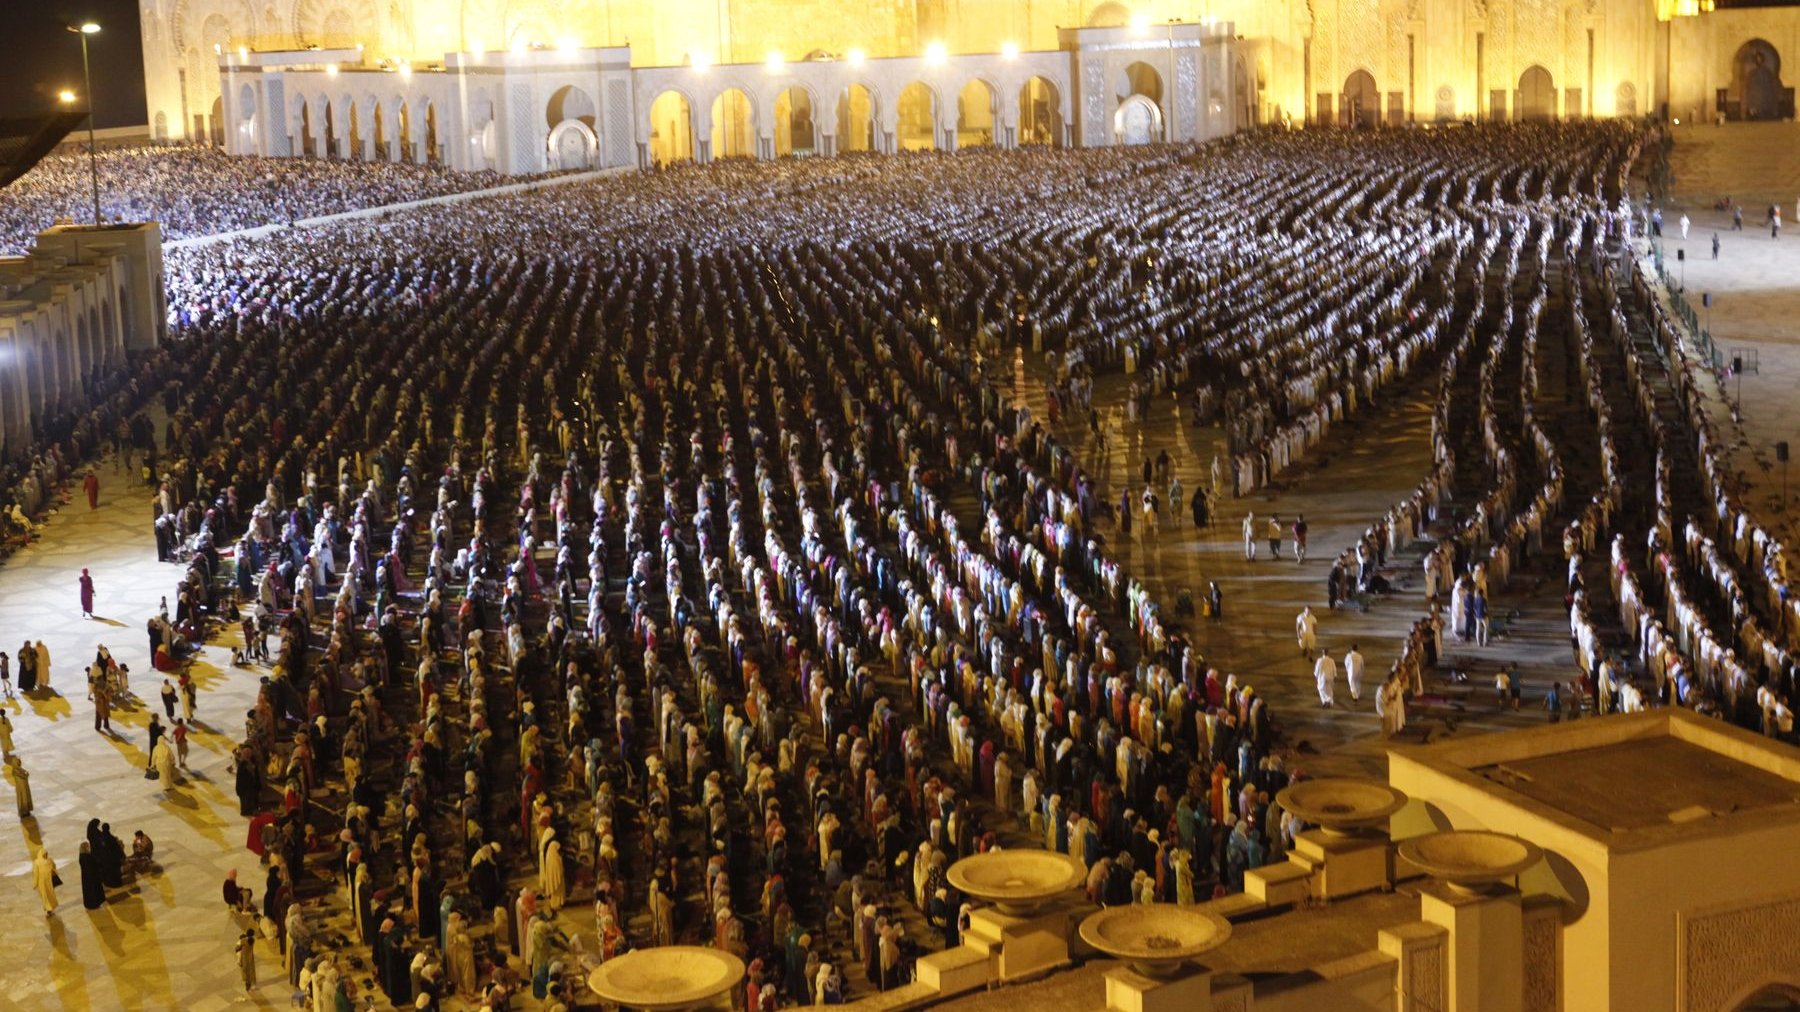 آلاف المصلين يأخذون أماكنهم للاصطفاف خلف الإمام عمر القزابري
